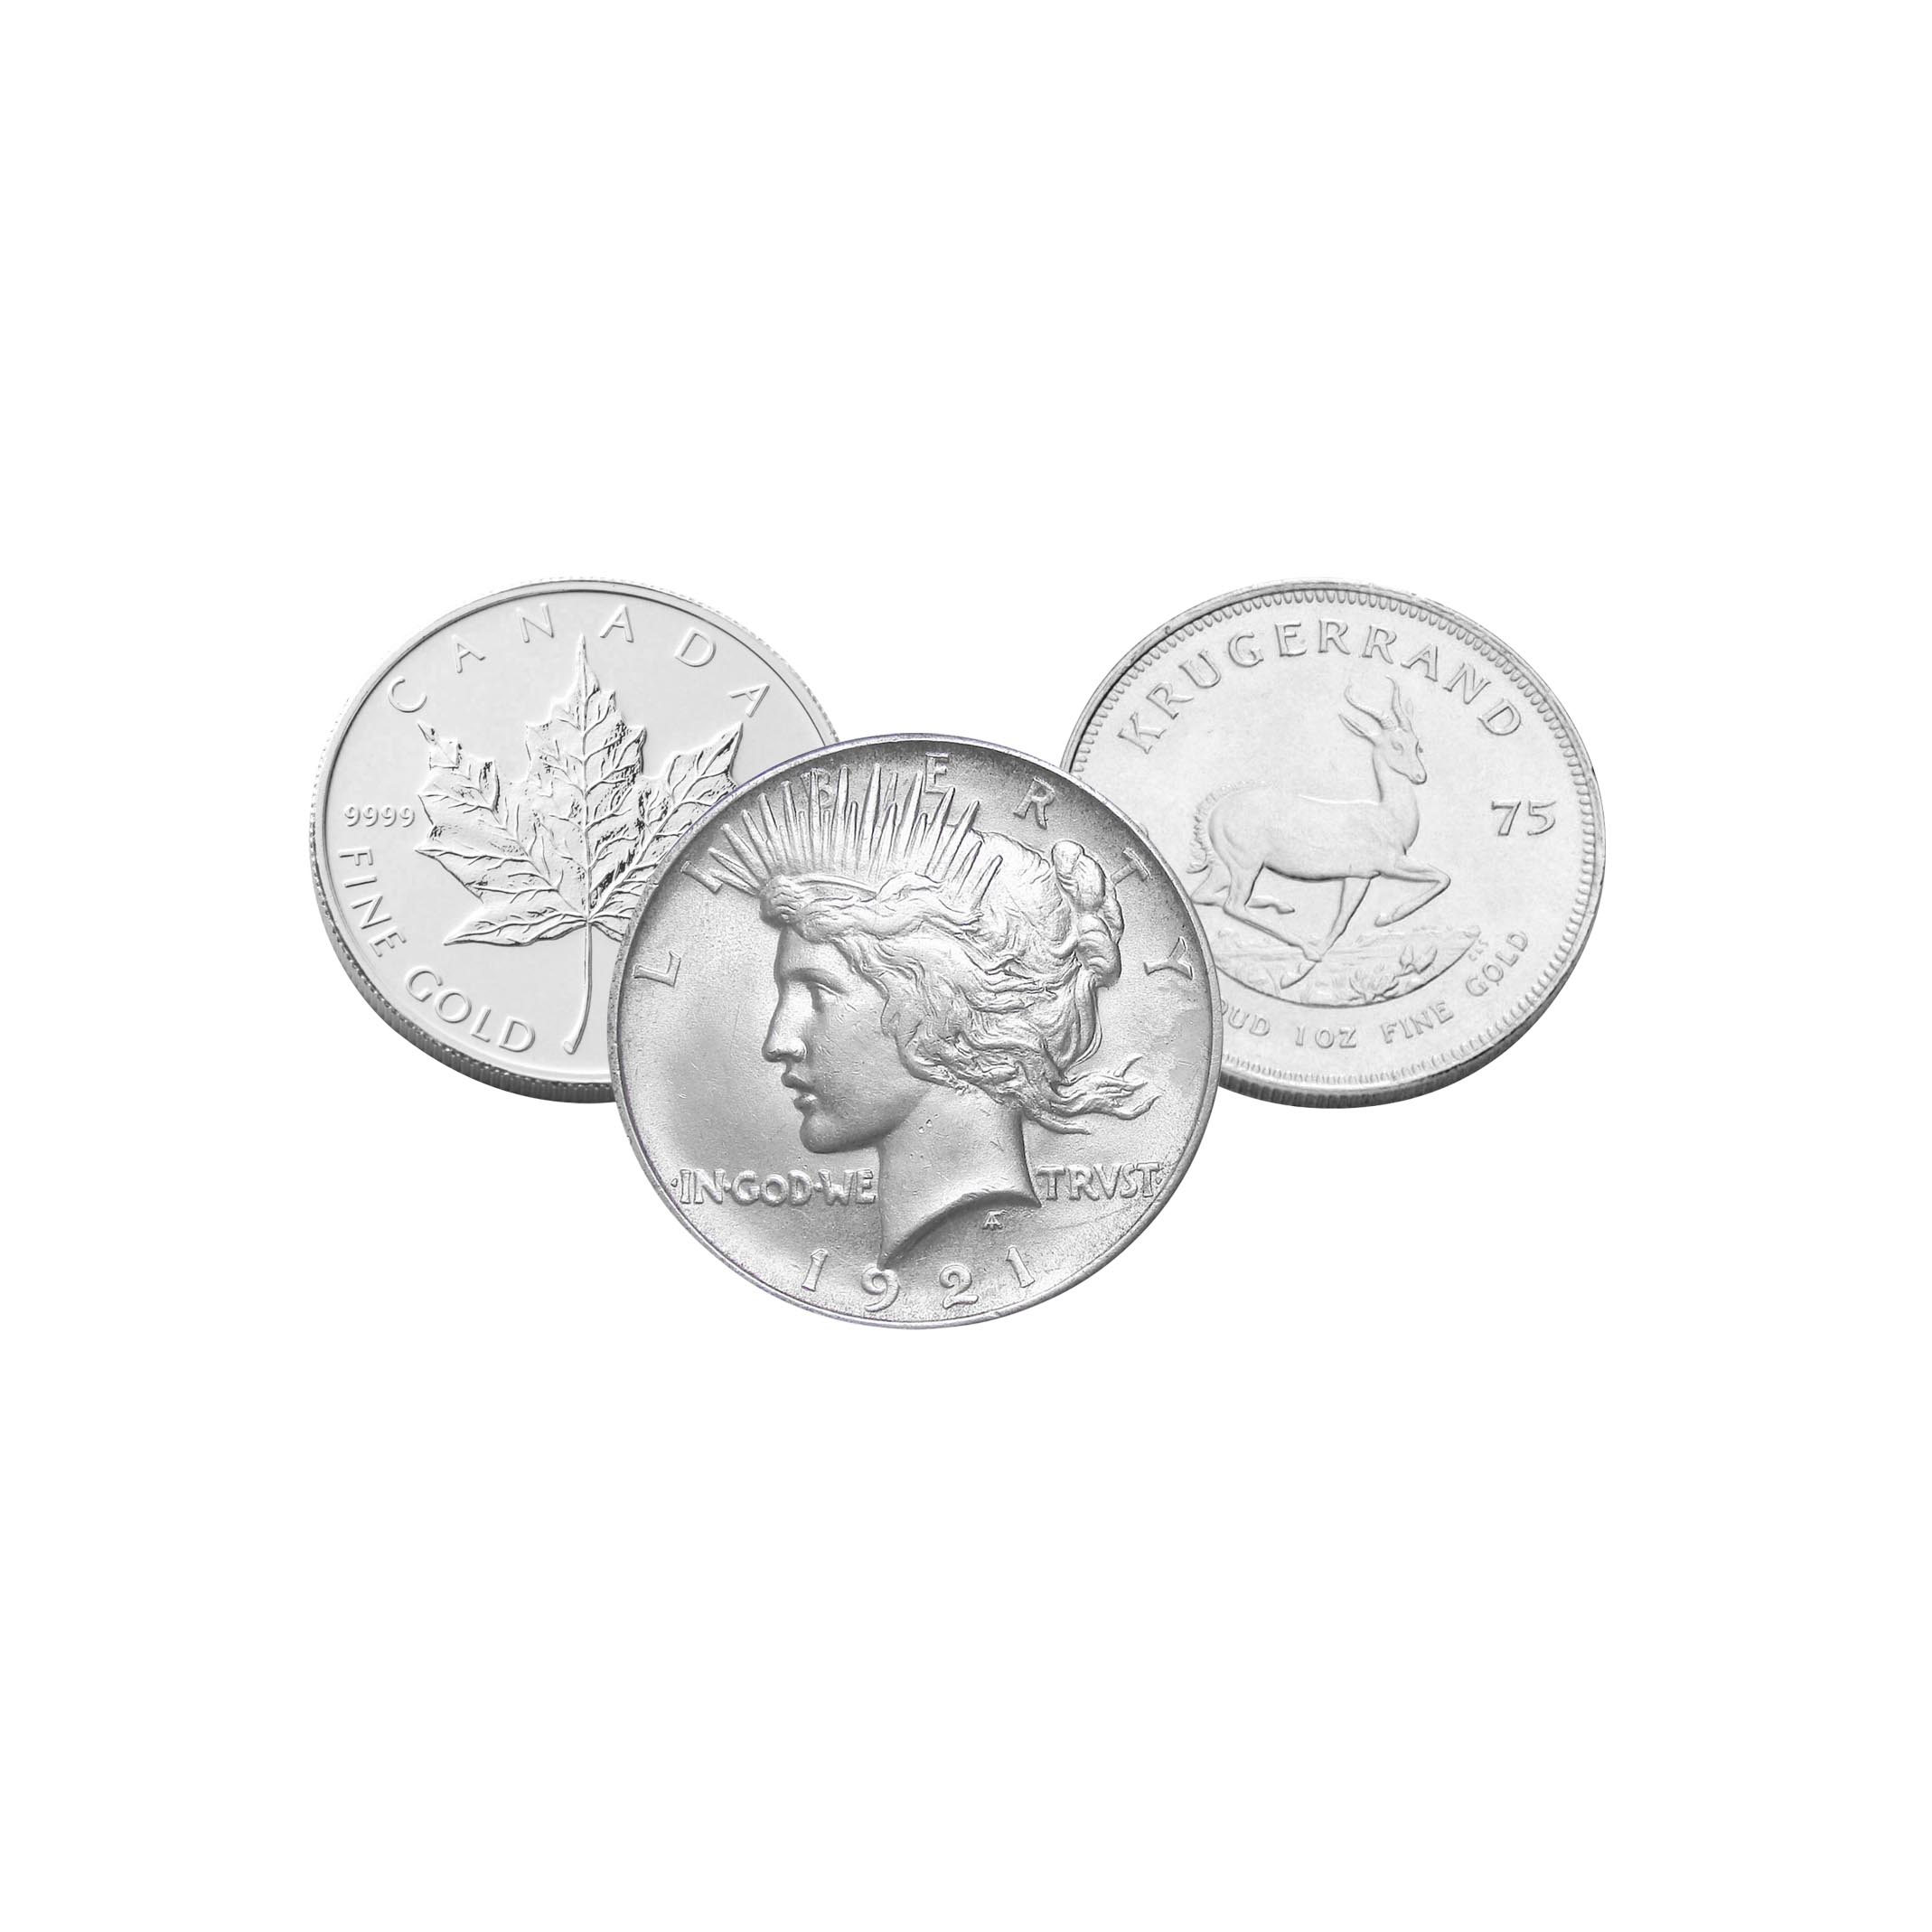 Three silver coins.